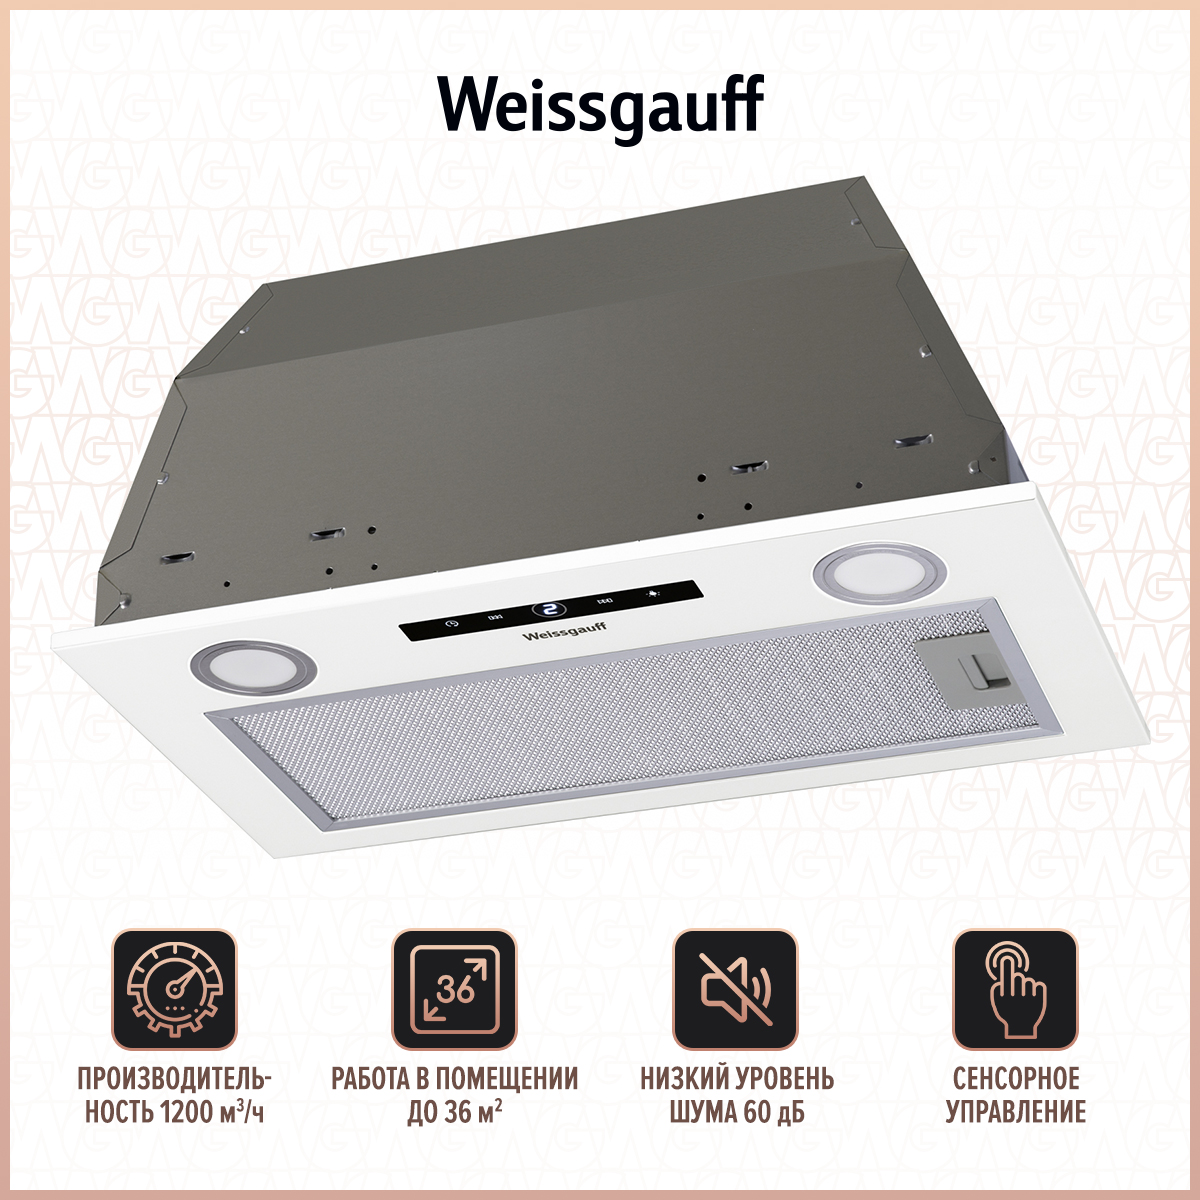 Вытяжка встраиваемая Weissgauff BOX 1200 WH White вытяжка встраиваемая weissgauff alpha 60 pb 60 см нержавеющая сталь